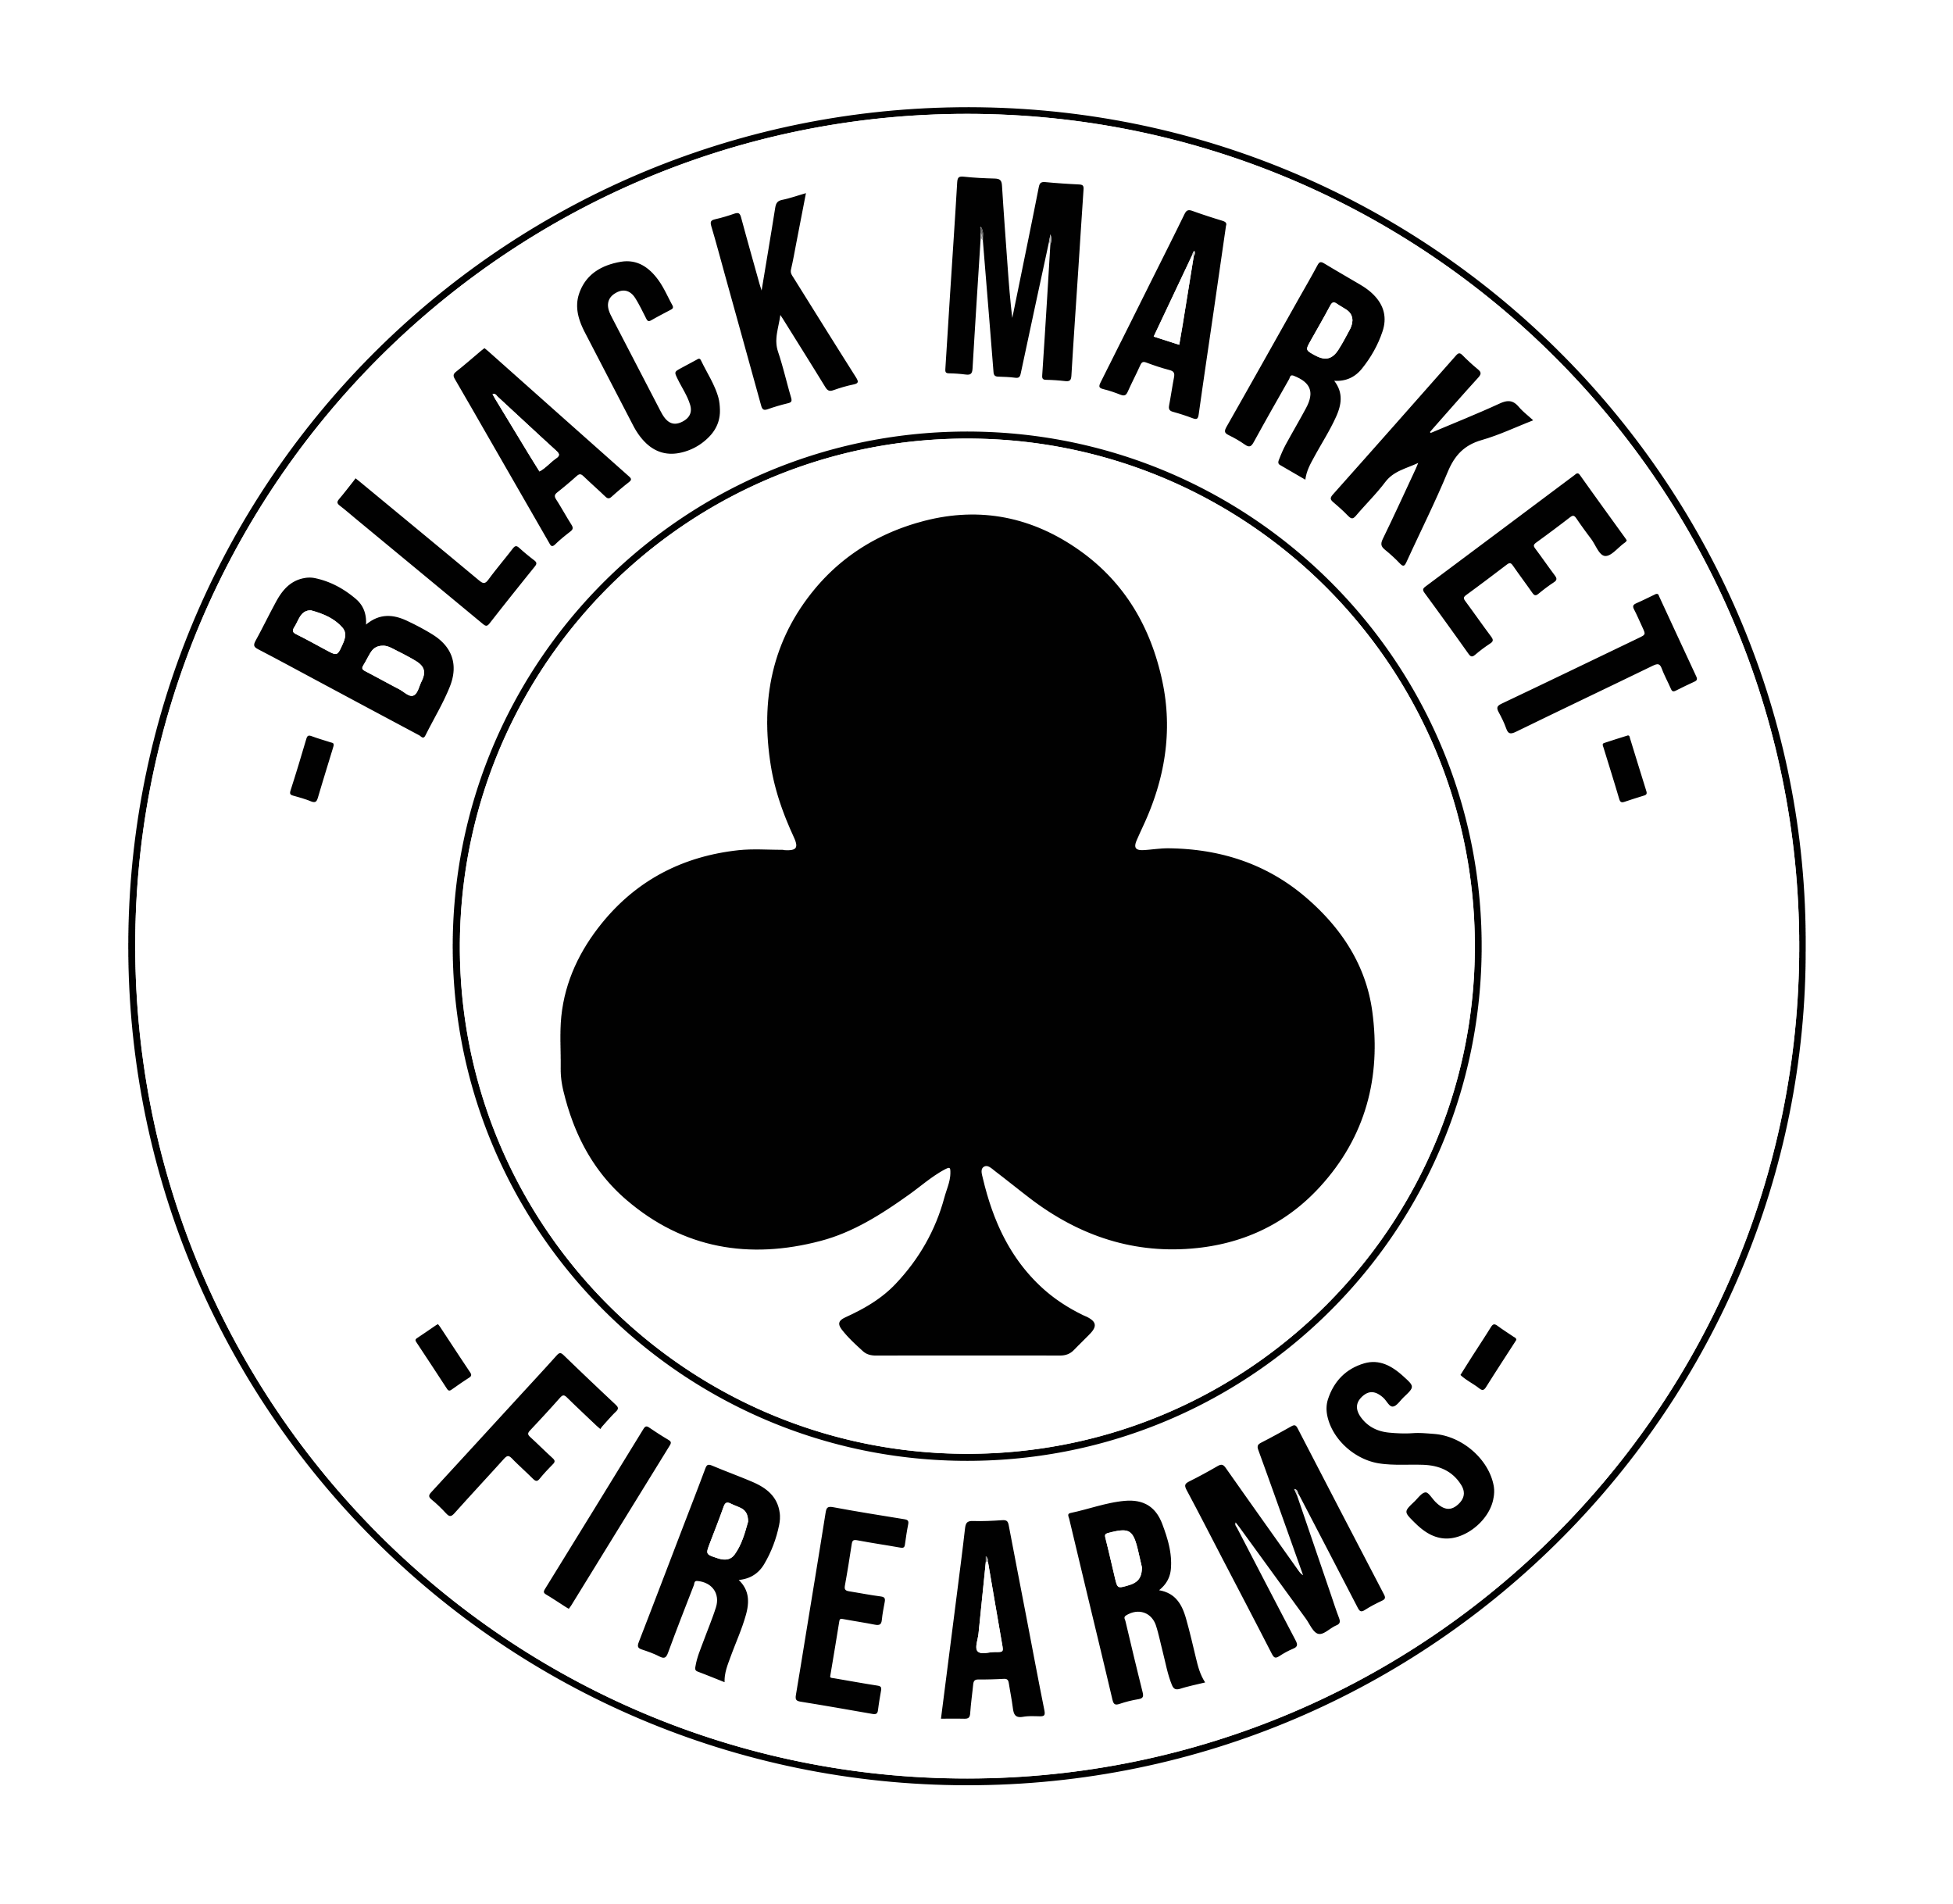 Black Market Firearms